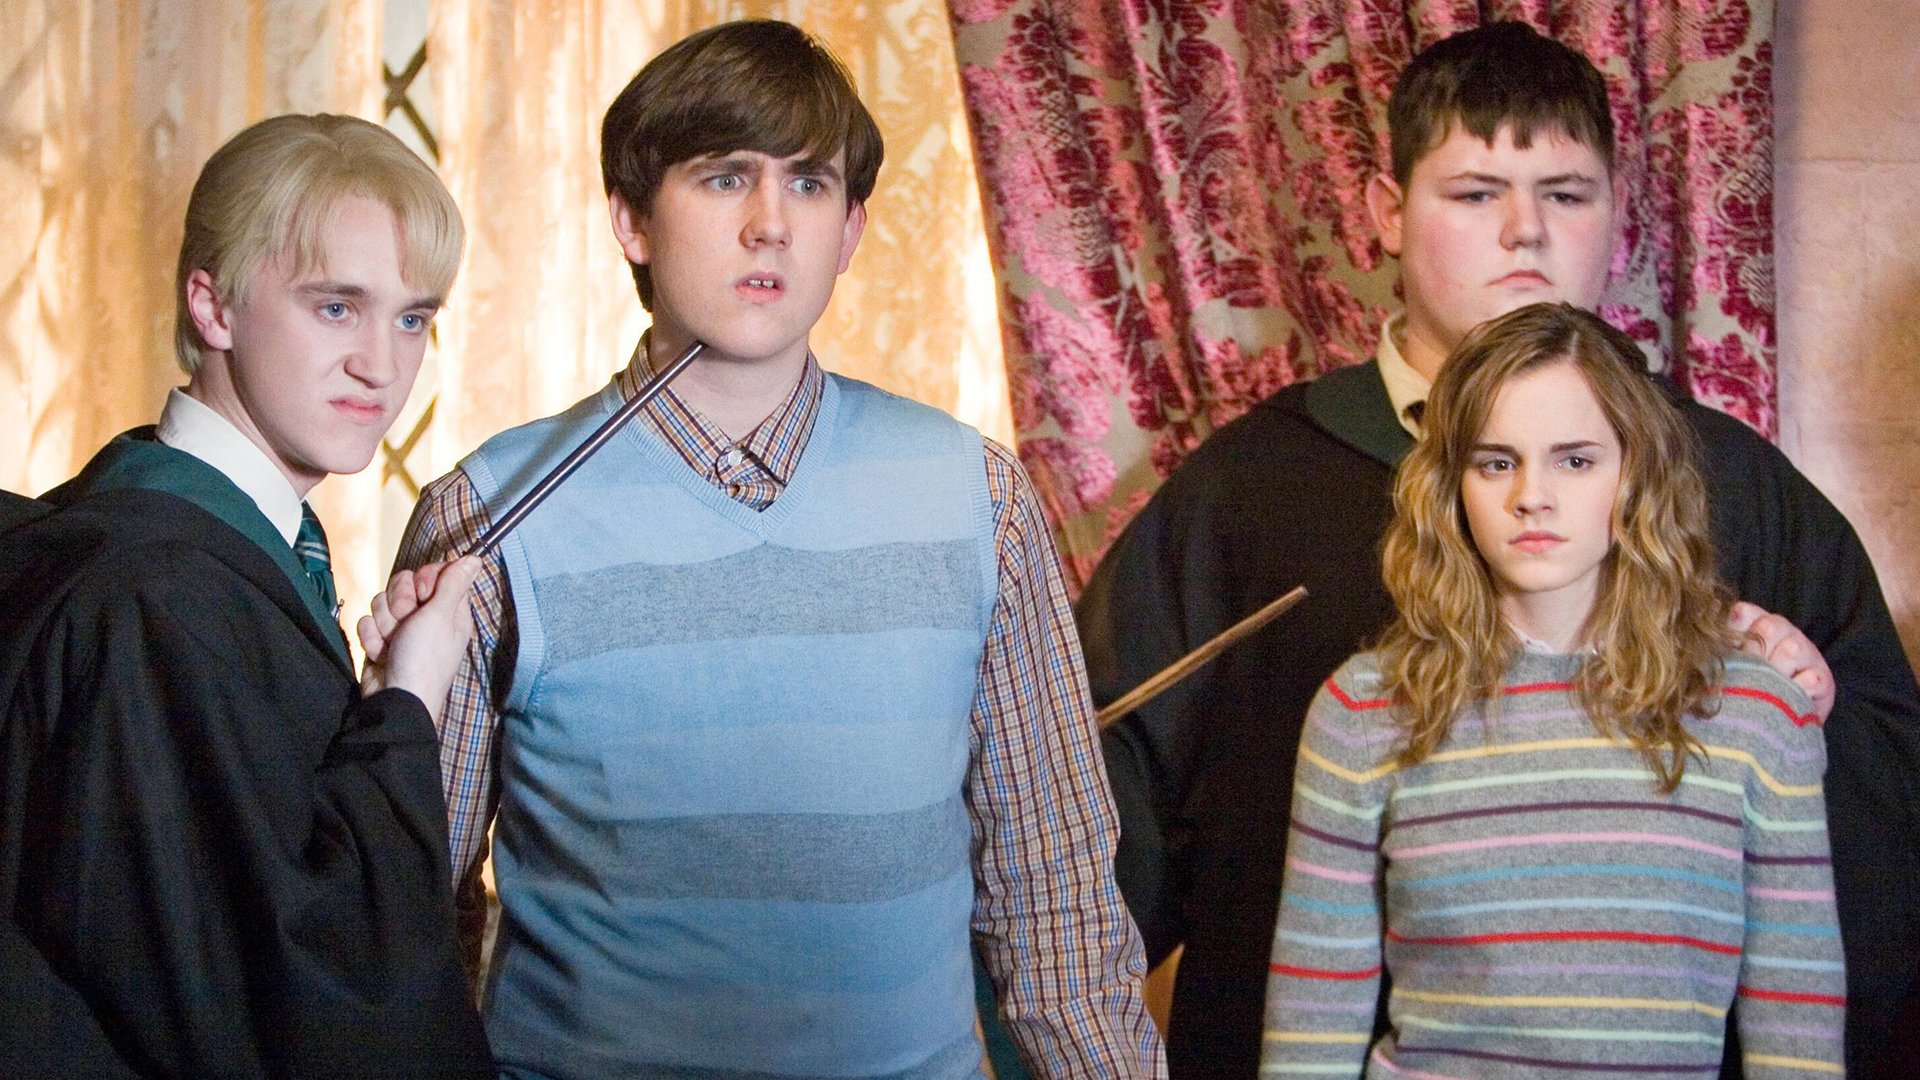 #„Harry Potter“-Star stellt Irrtum über die Filme und J.K. Rowling klar